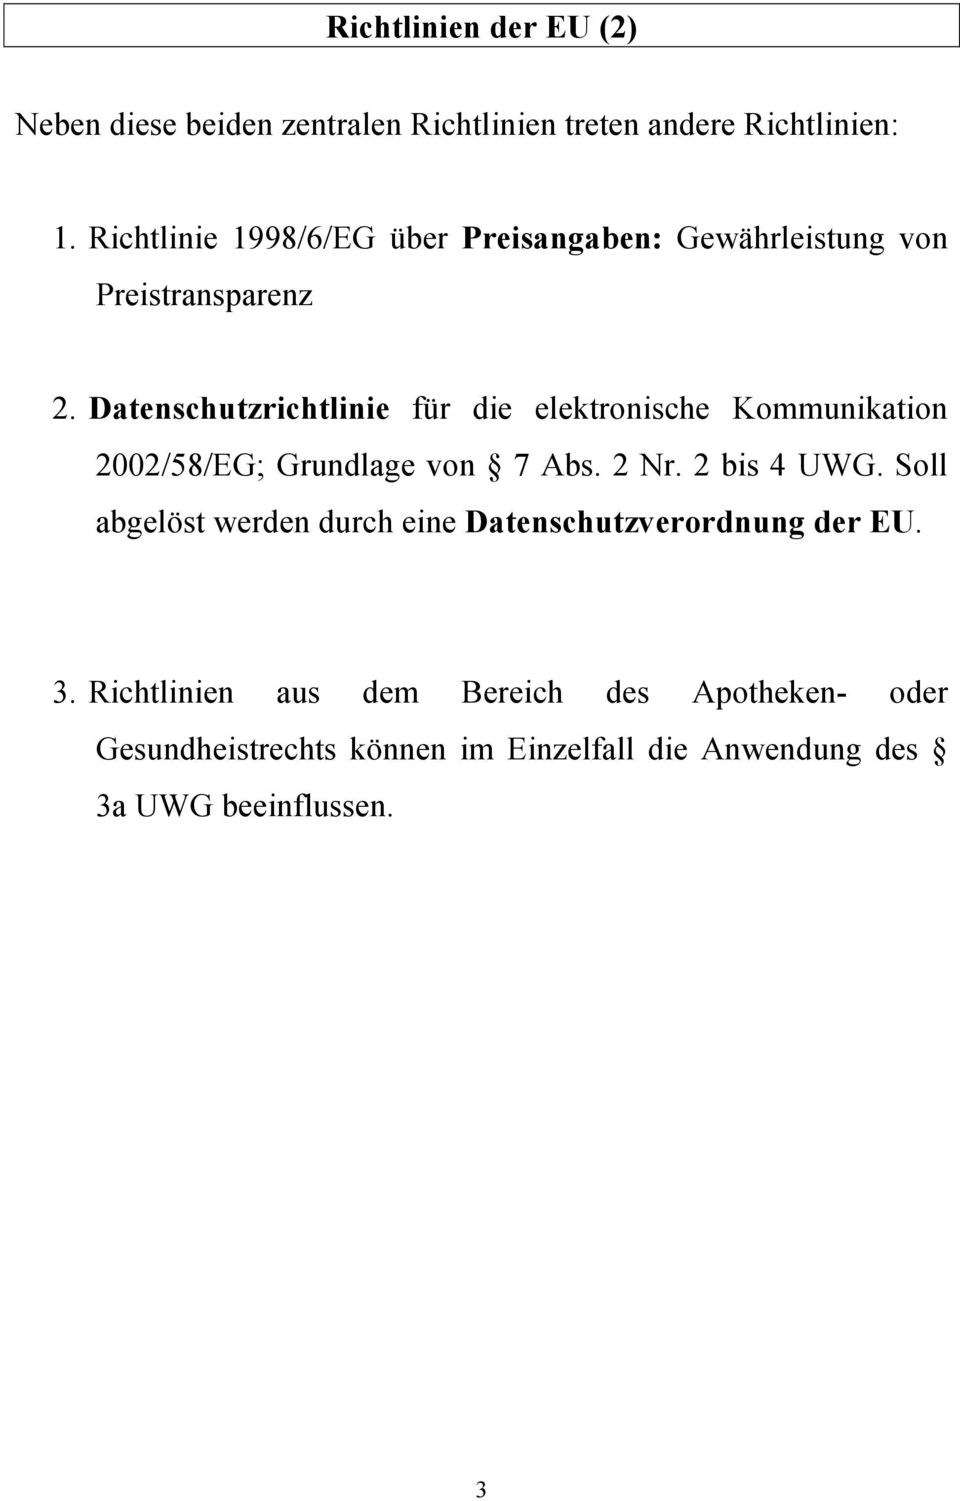 Datenschutzrichtlinie für die elektronische Kommunikation 2002/58/EG; Grundlage von 7 Abs. 2 Nr. 2 bis 4 UWG.